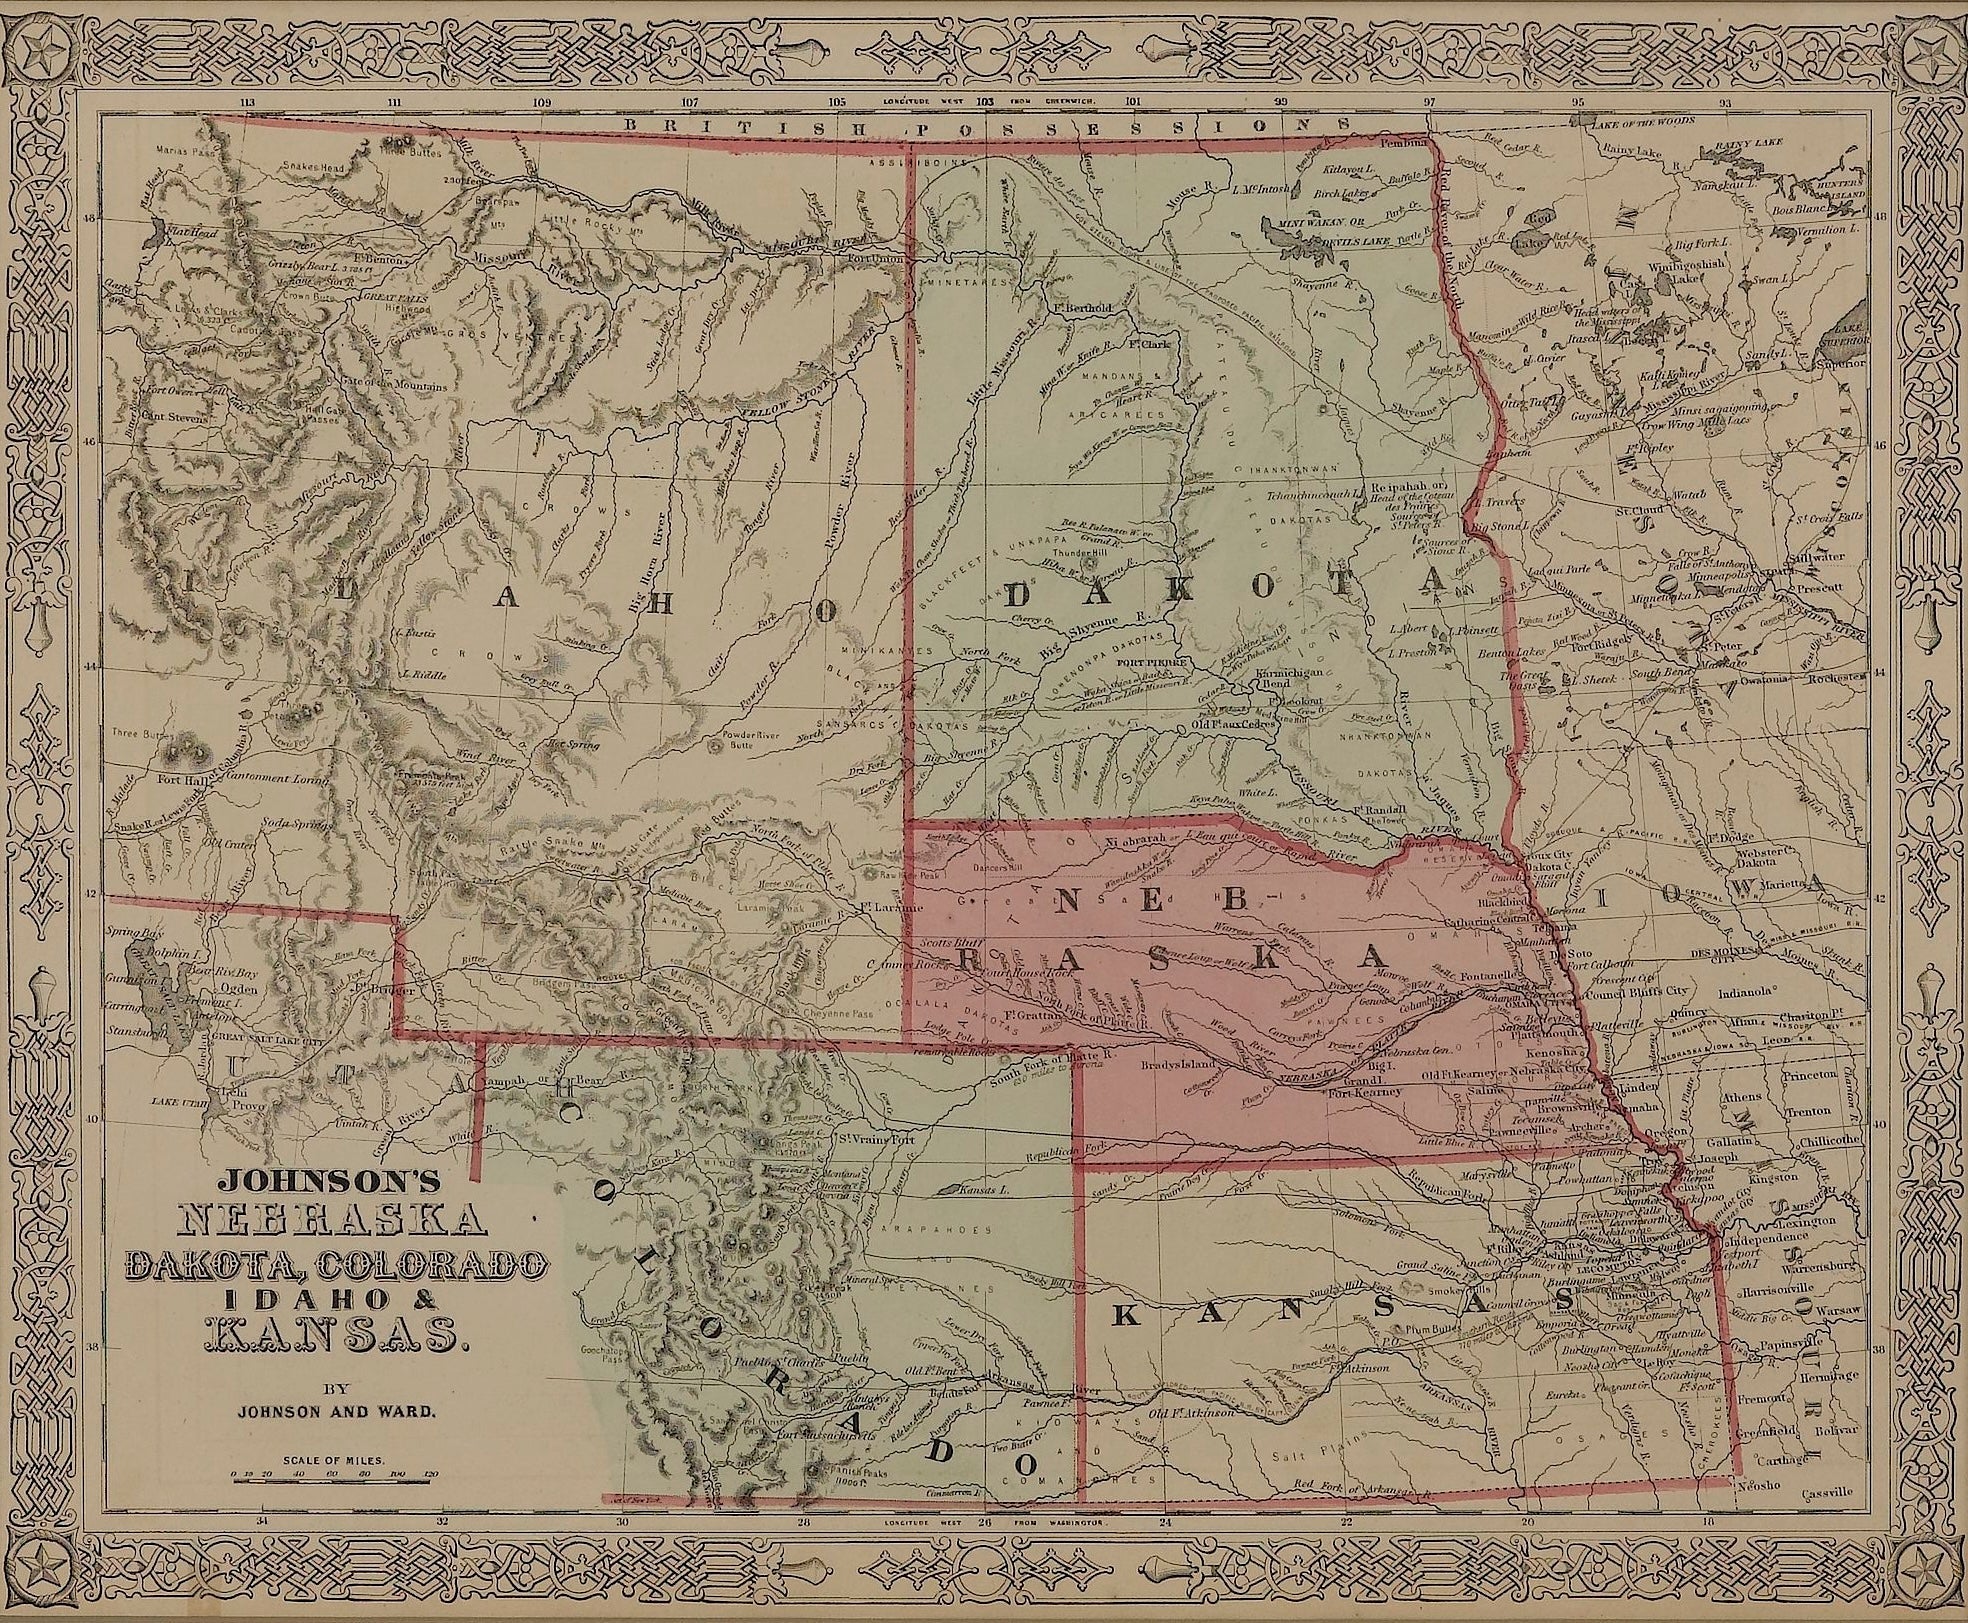 1865 "Johnson's Nebraska, Dakota, Colorado, Idaho & Kansas" Map by Johnson and Ward - The Great Republic